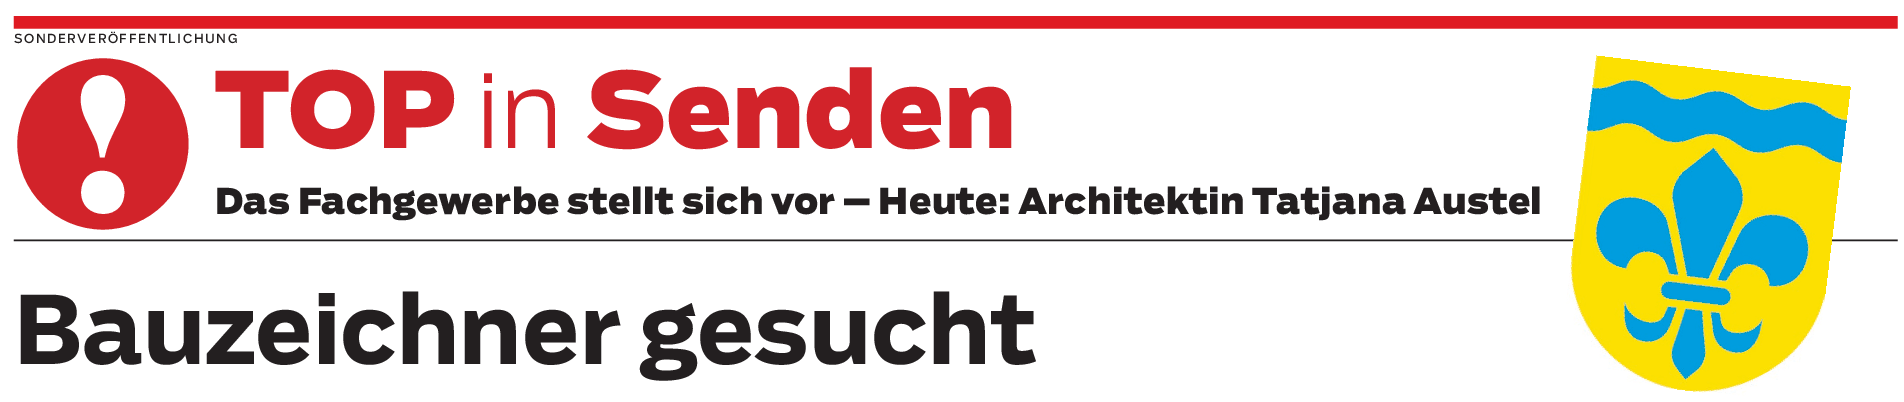 Bauzeichner für Architekturbüro Austel in Senden gesucht 